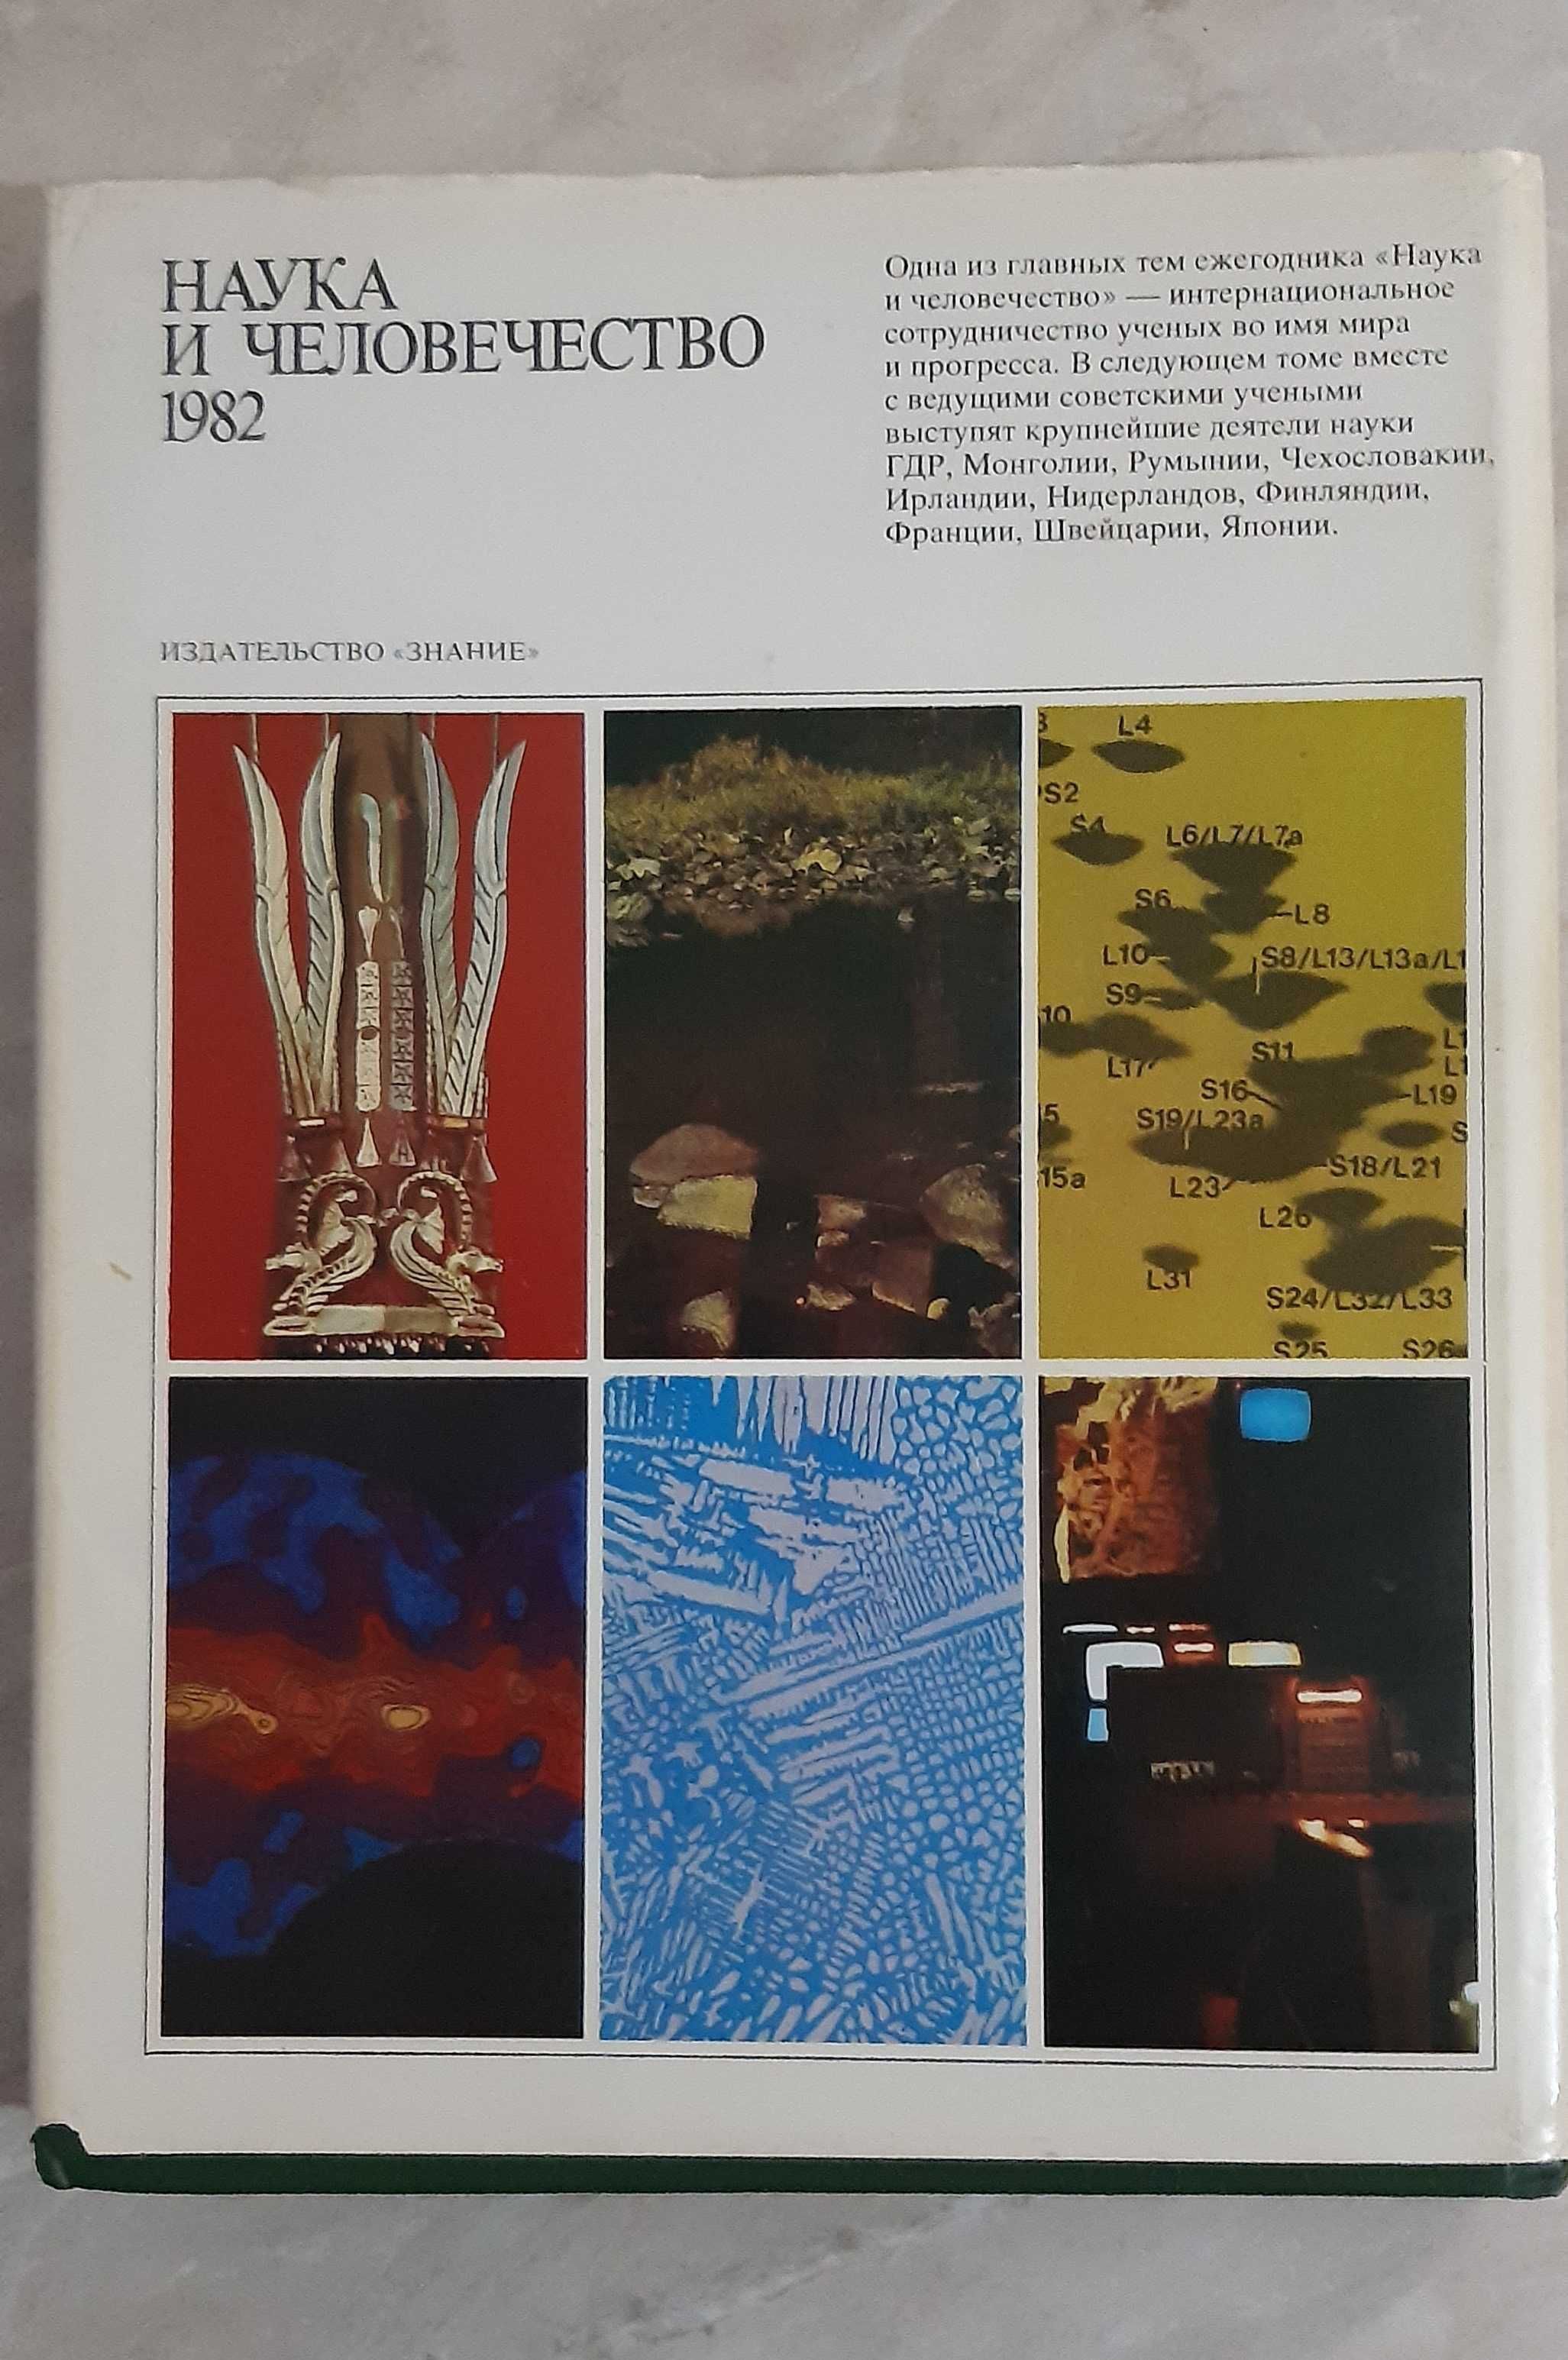 Международный ежегодник "Наука и человечество" 1981,1982 гг.